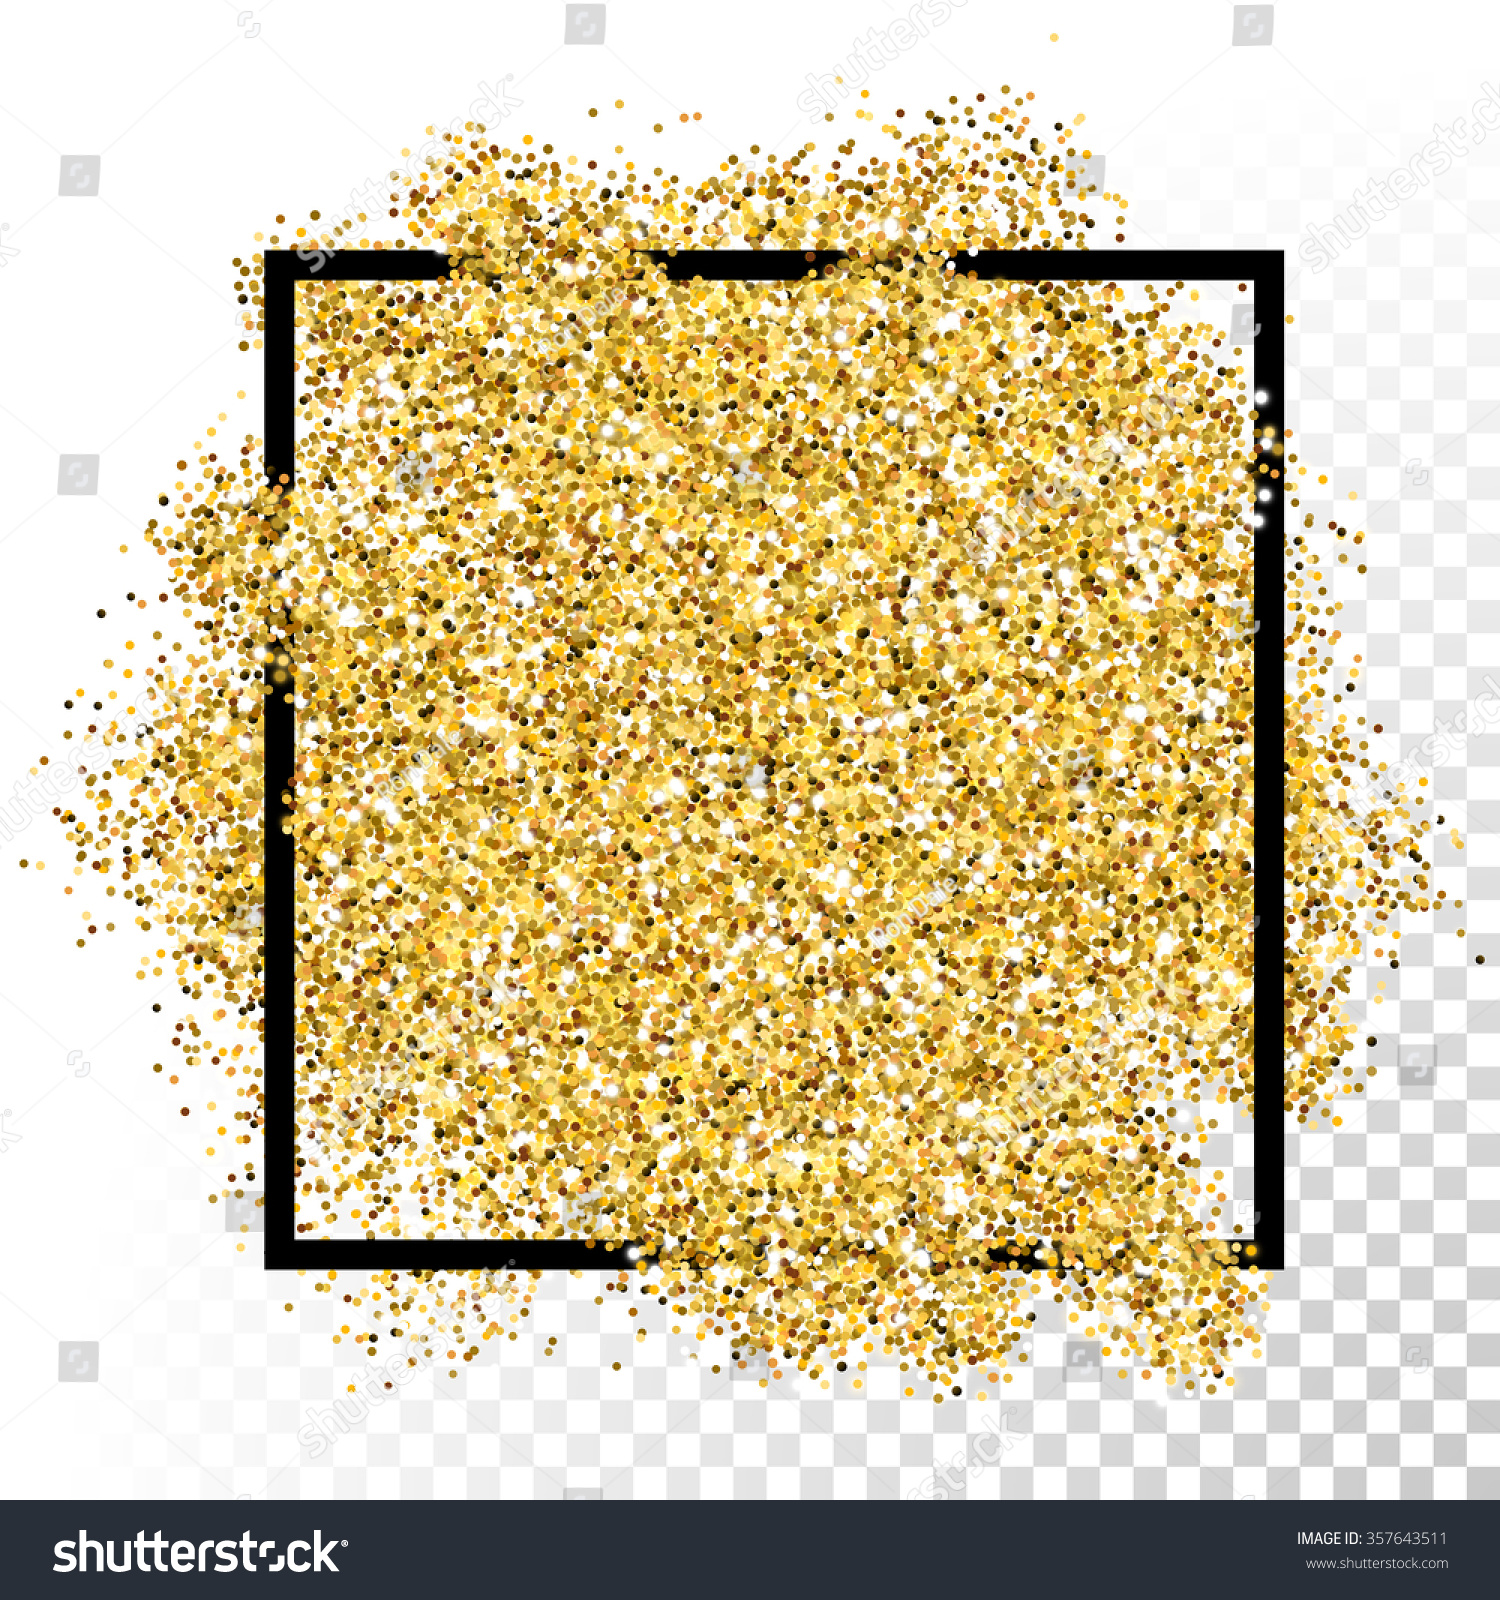 Vector Gold Glitter Background Border Frame Stock Vector 357643511 ...